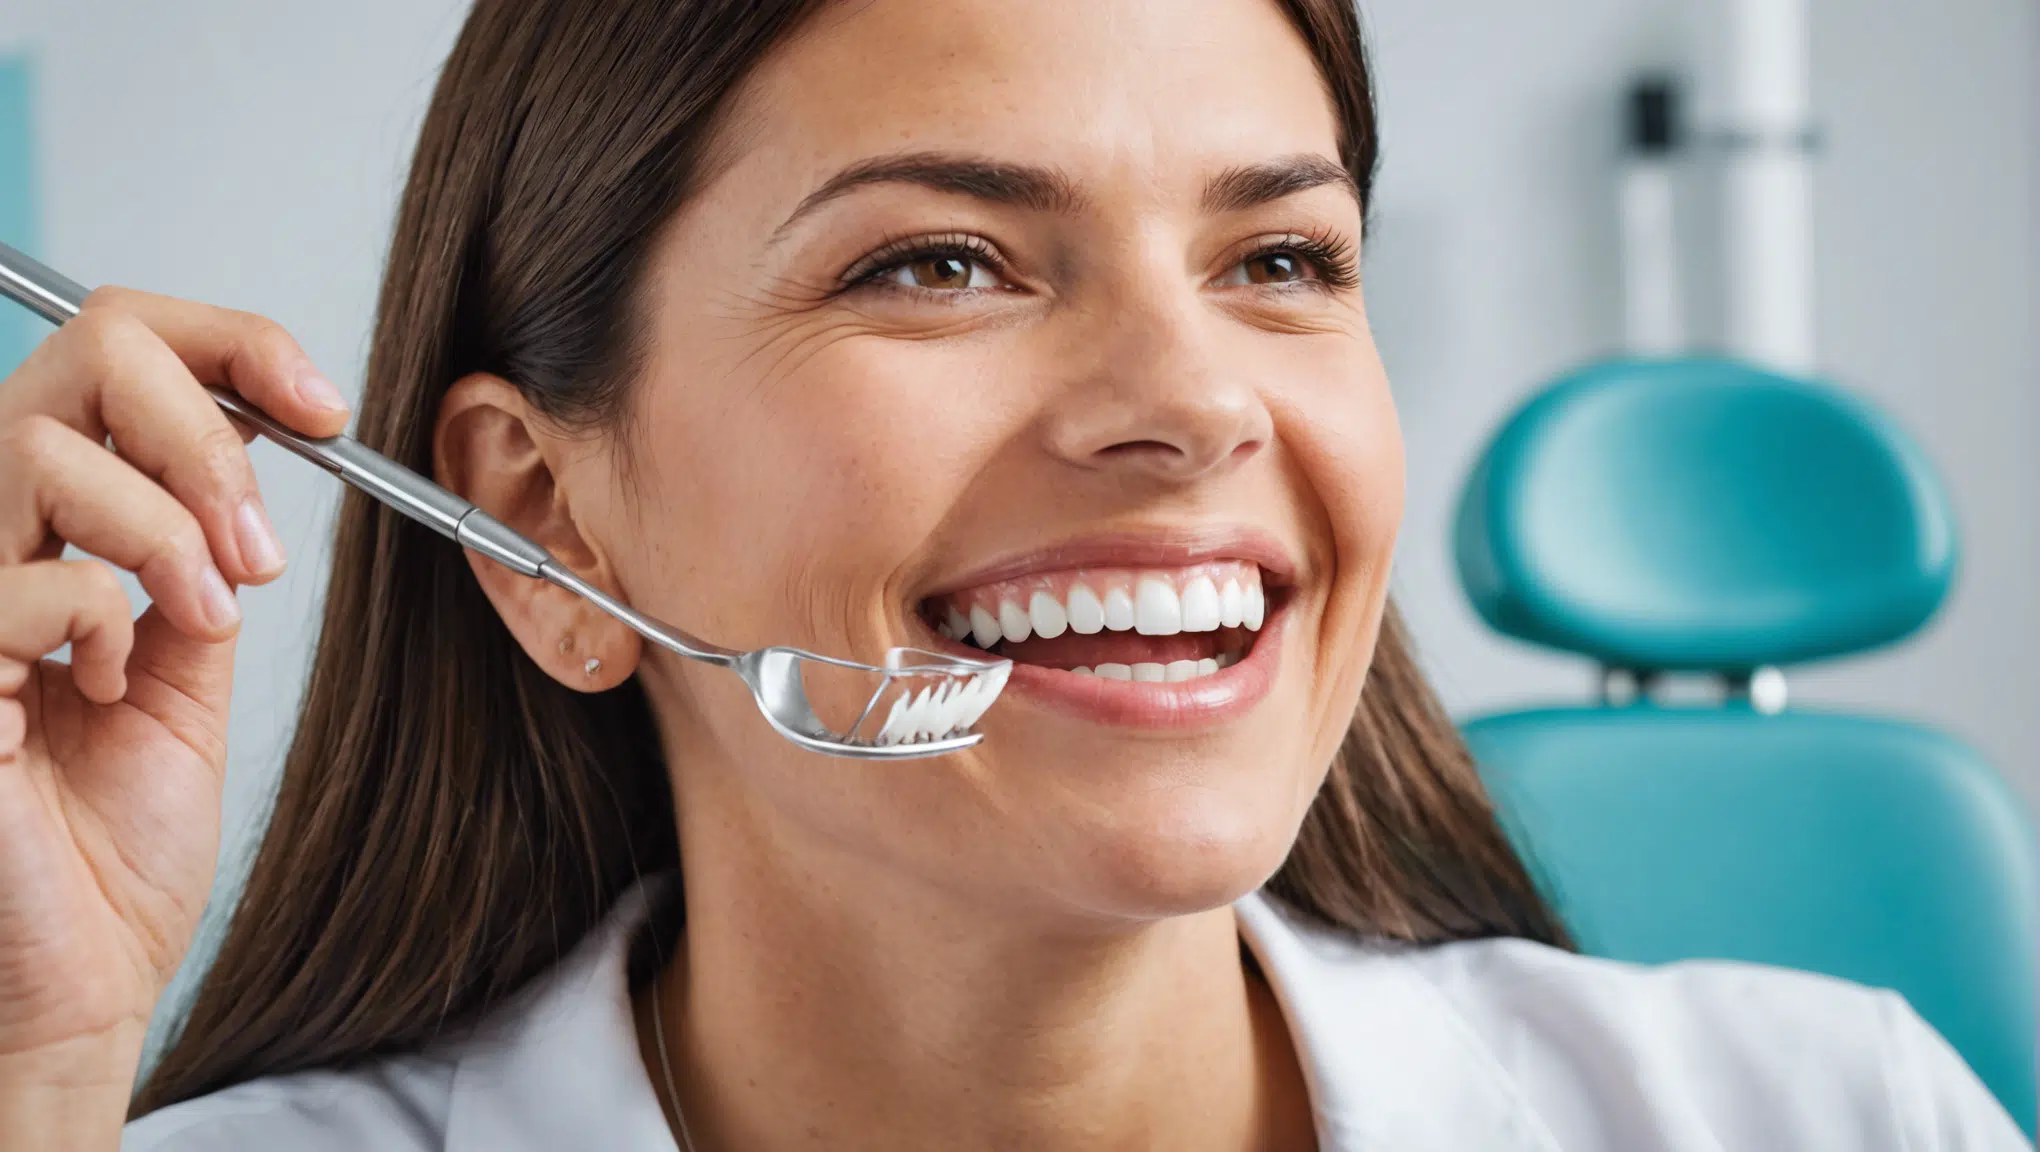 découvrez nos conseils pour prendre soin de sa santé bucco-dentaire et préserver votre sourire. apprenez les bonnes pratiques d'hygiène dentaire pour une bouche en pleine santé.